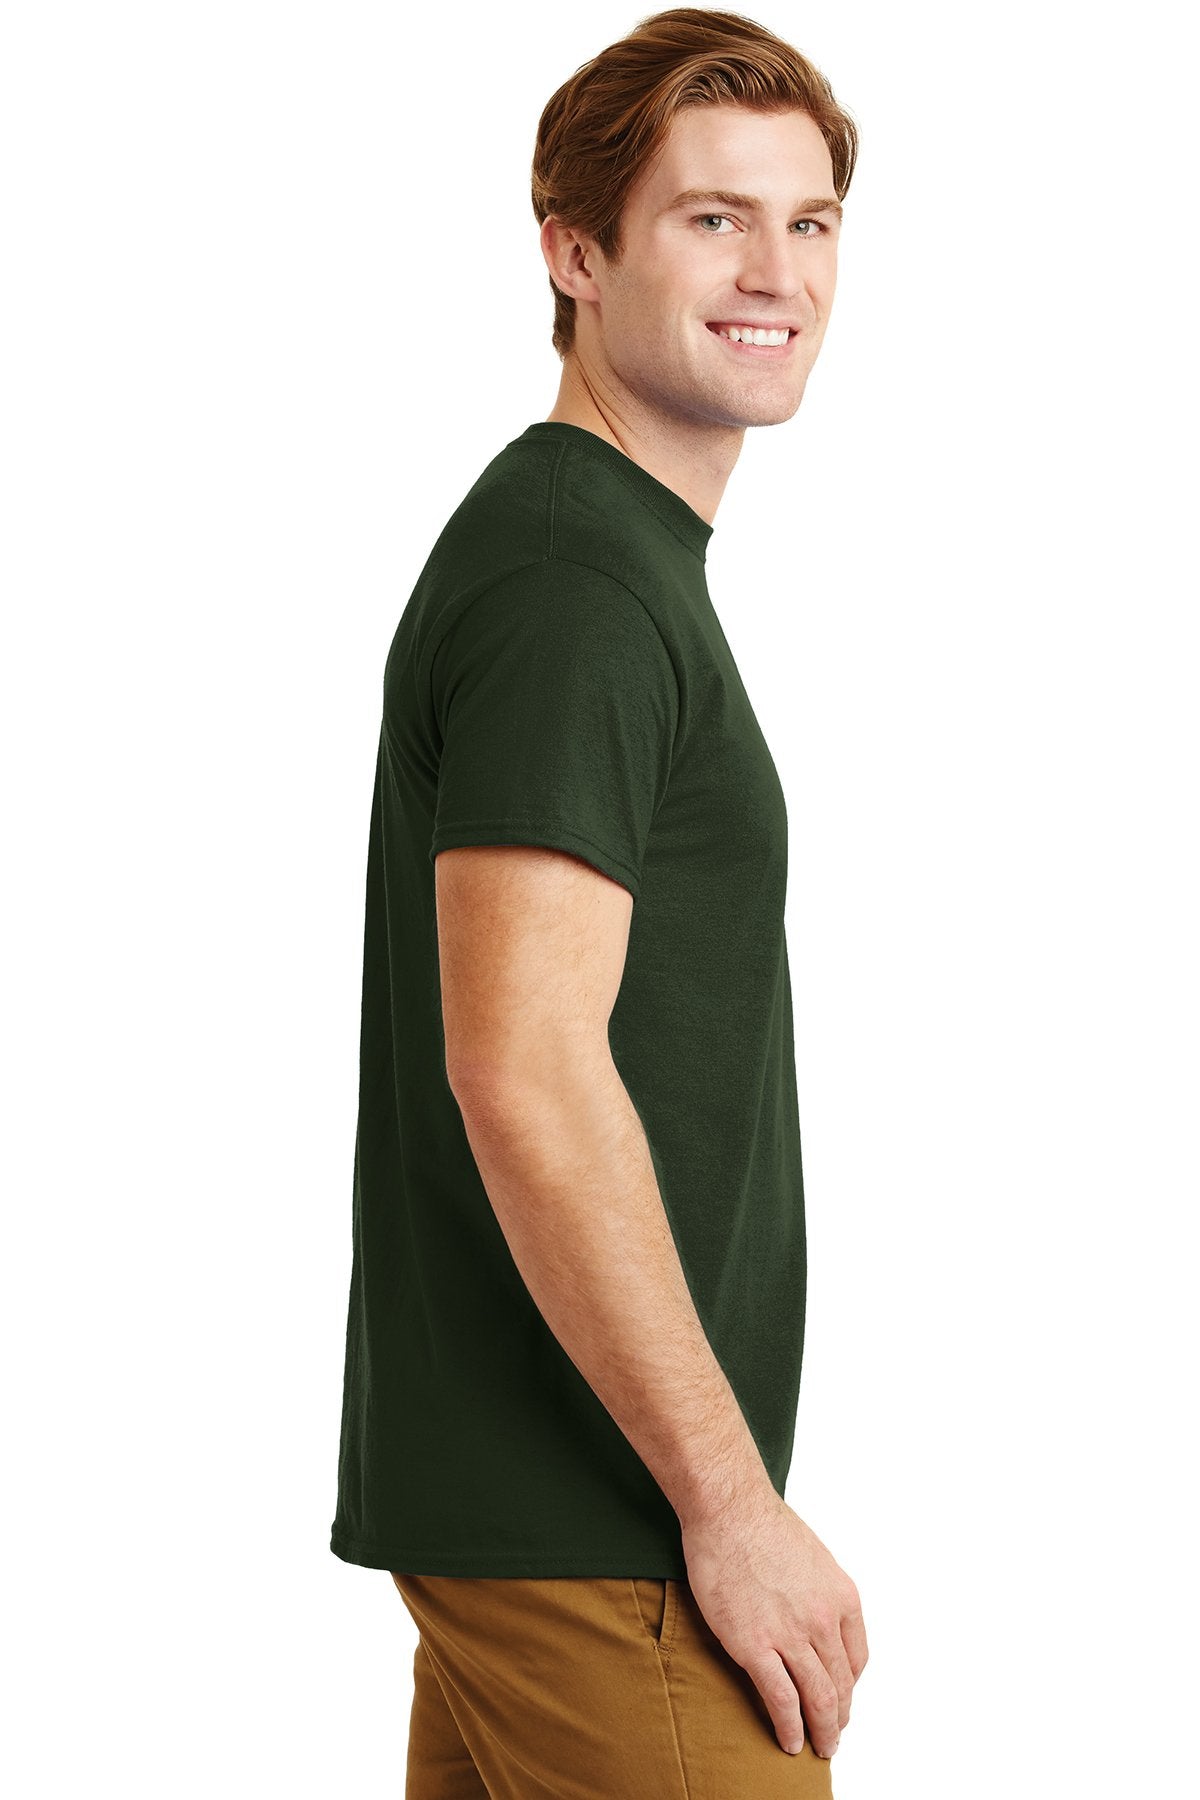 gildan dryblend cotton poly pocket t shirt 8300 forest green